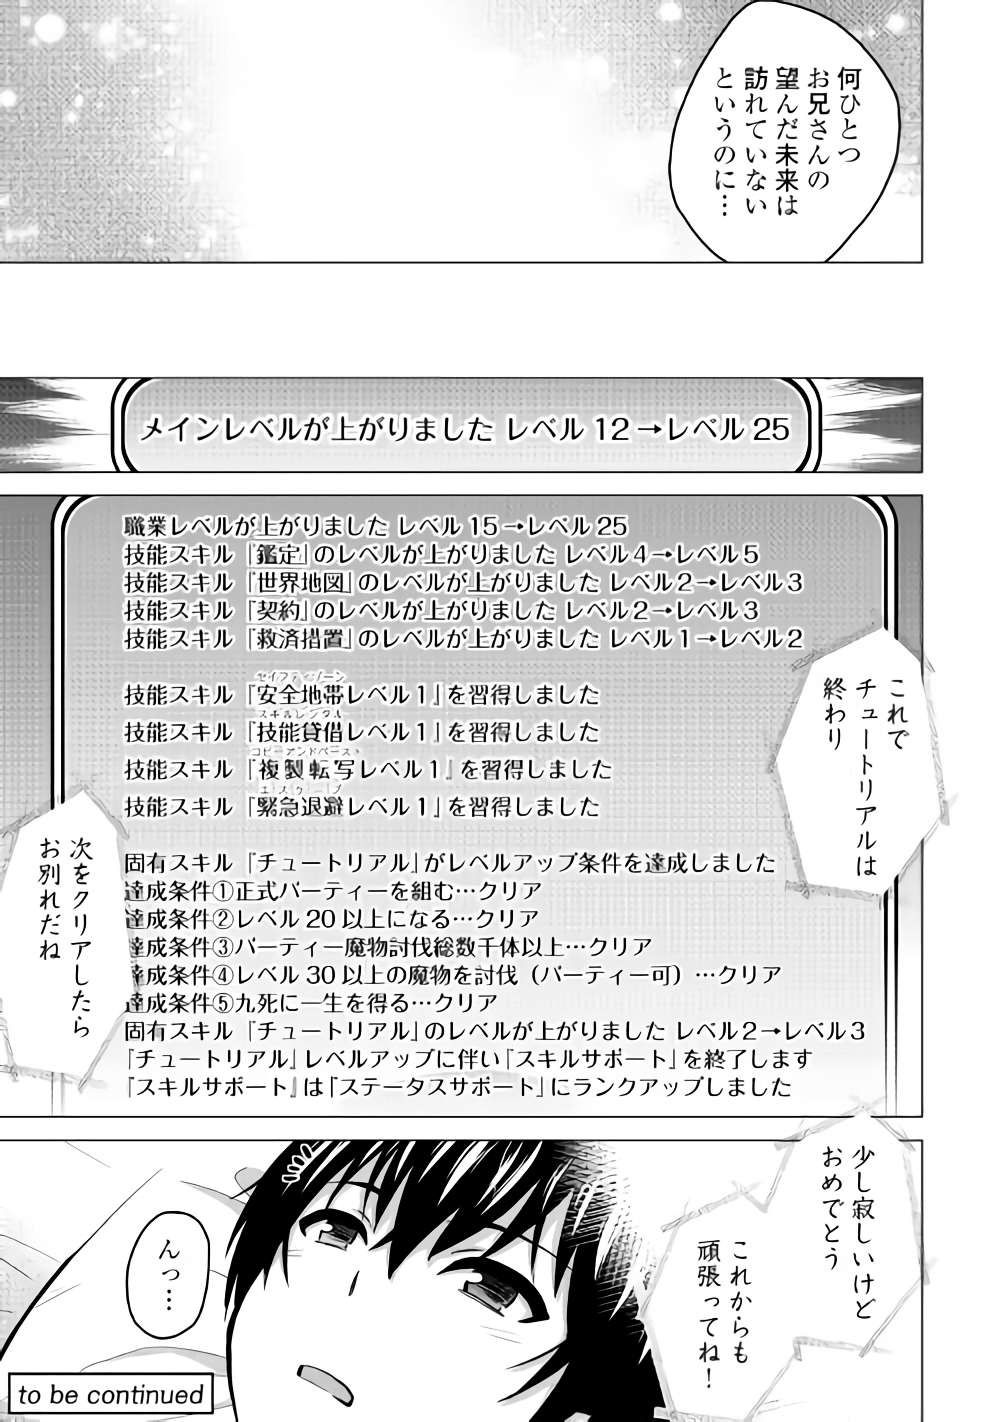 Saikyou no Shokugyou wa Yuusha demo Kenja demo naku Kanteishi (Kari) rashii desu yo? - Chapter 16 - Page 15